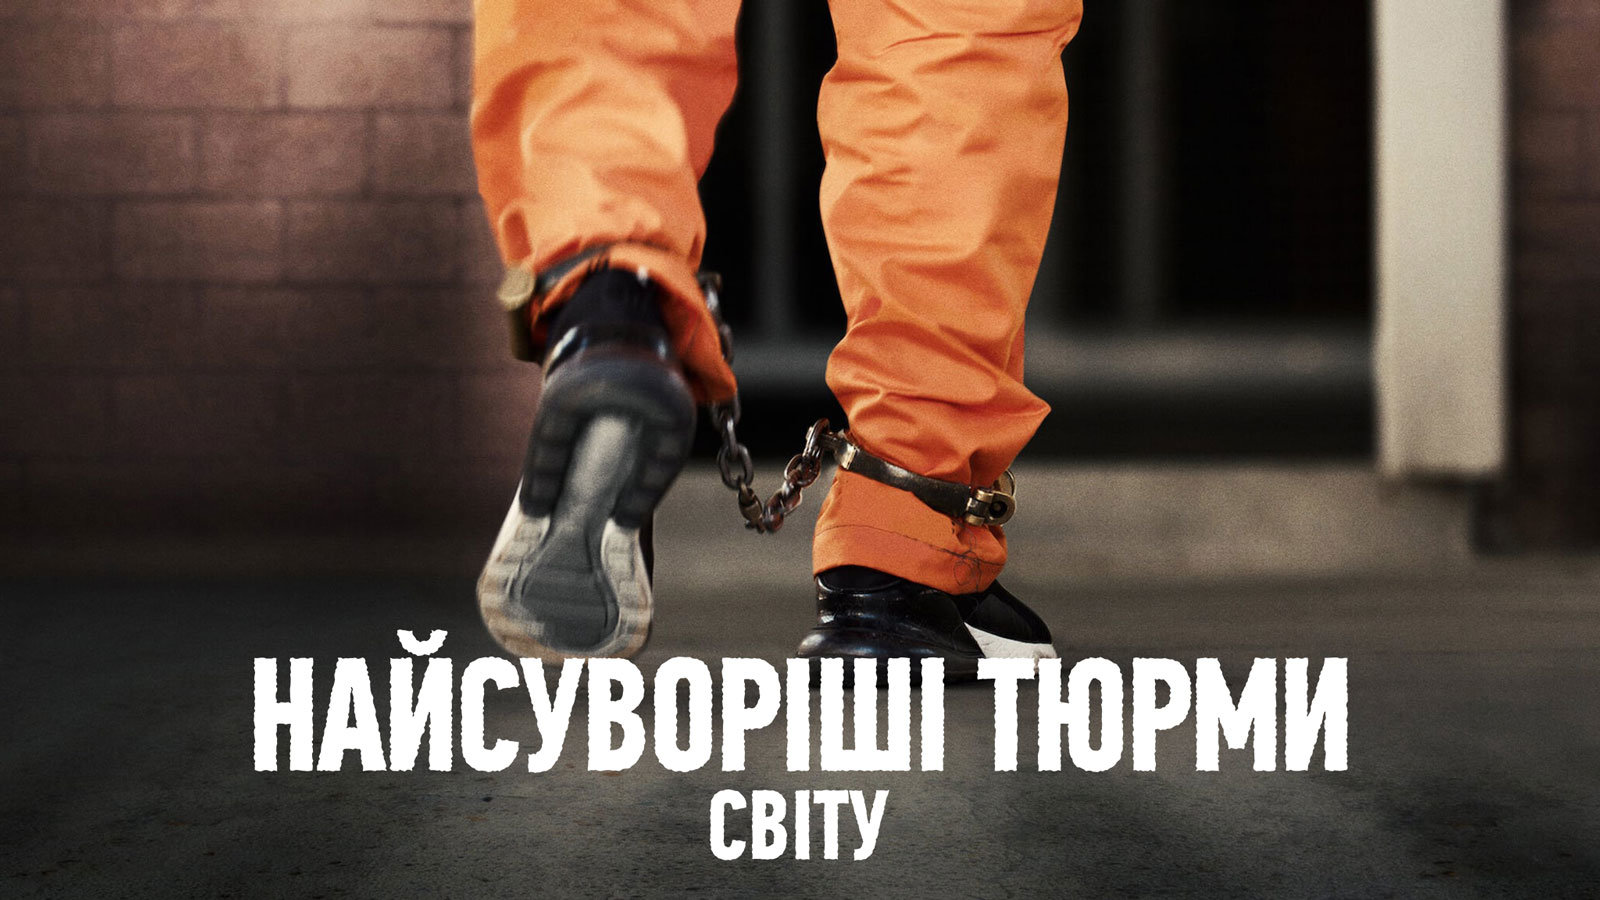 prisoner walking with cuffs on feet